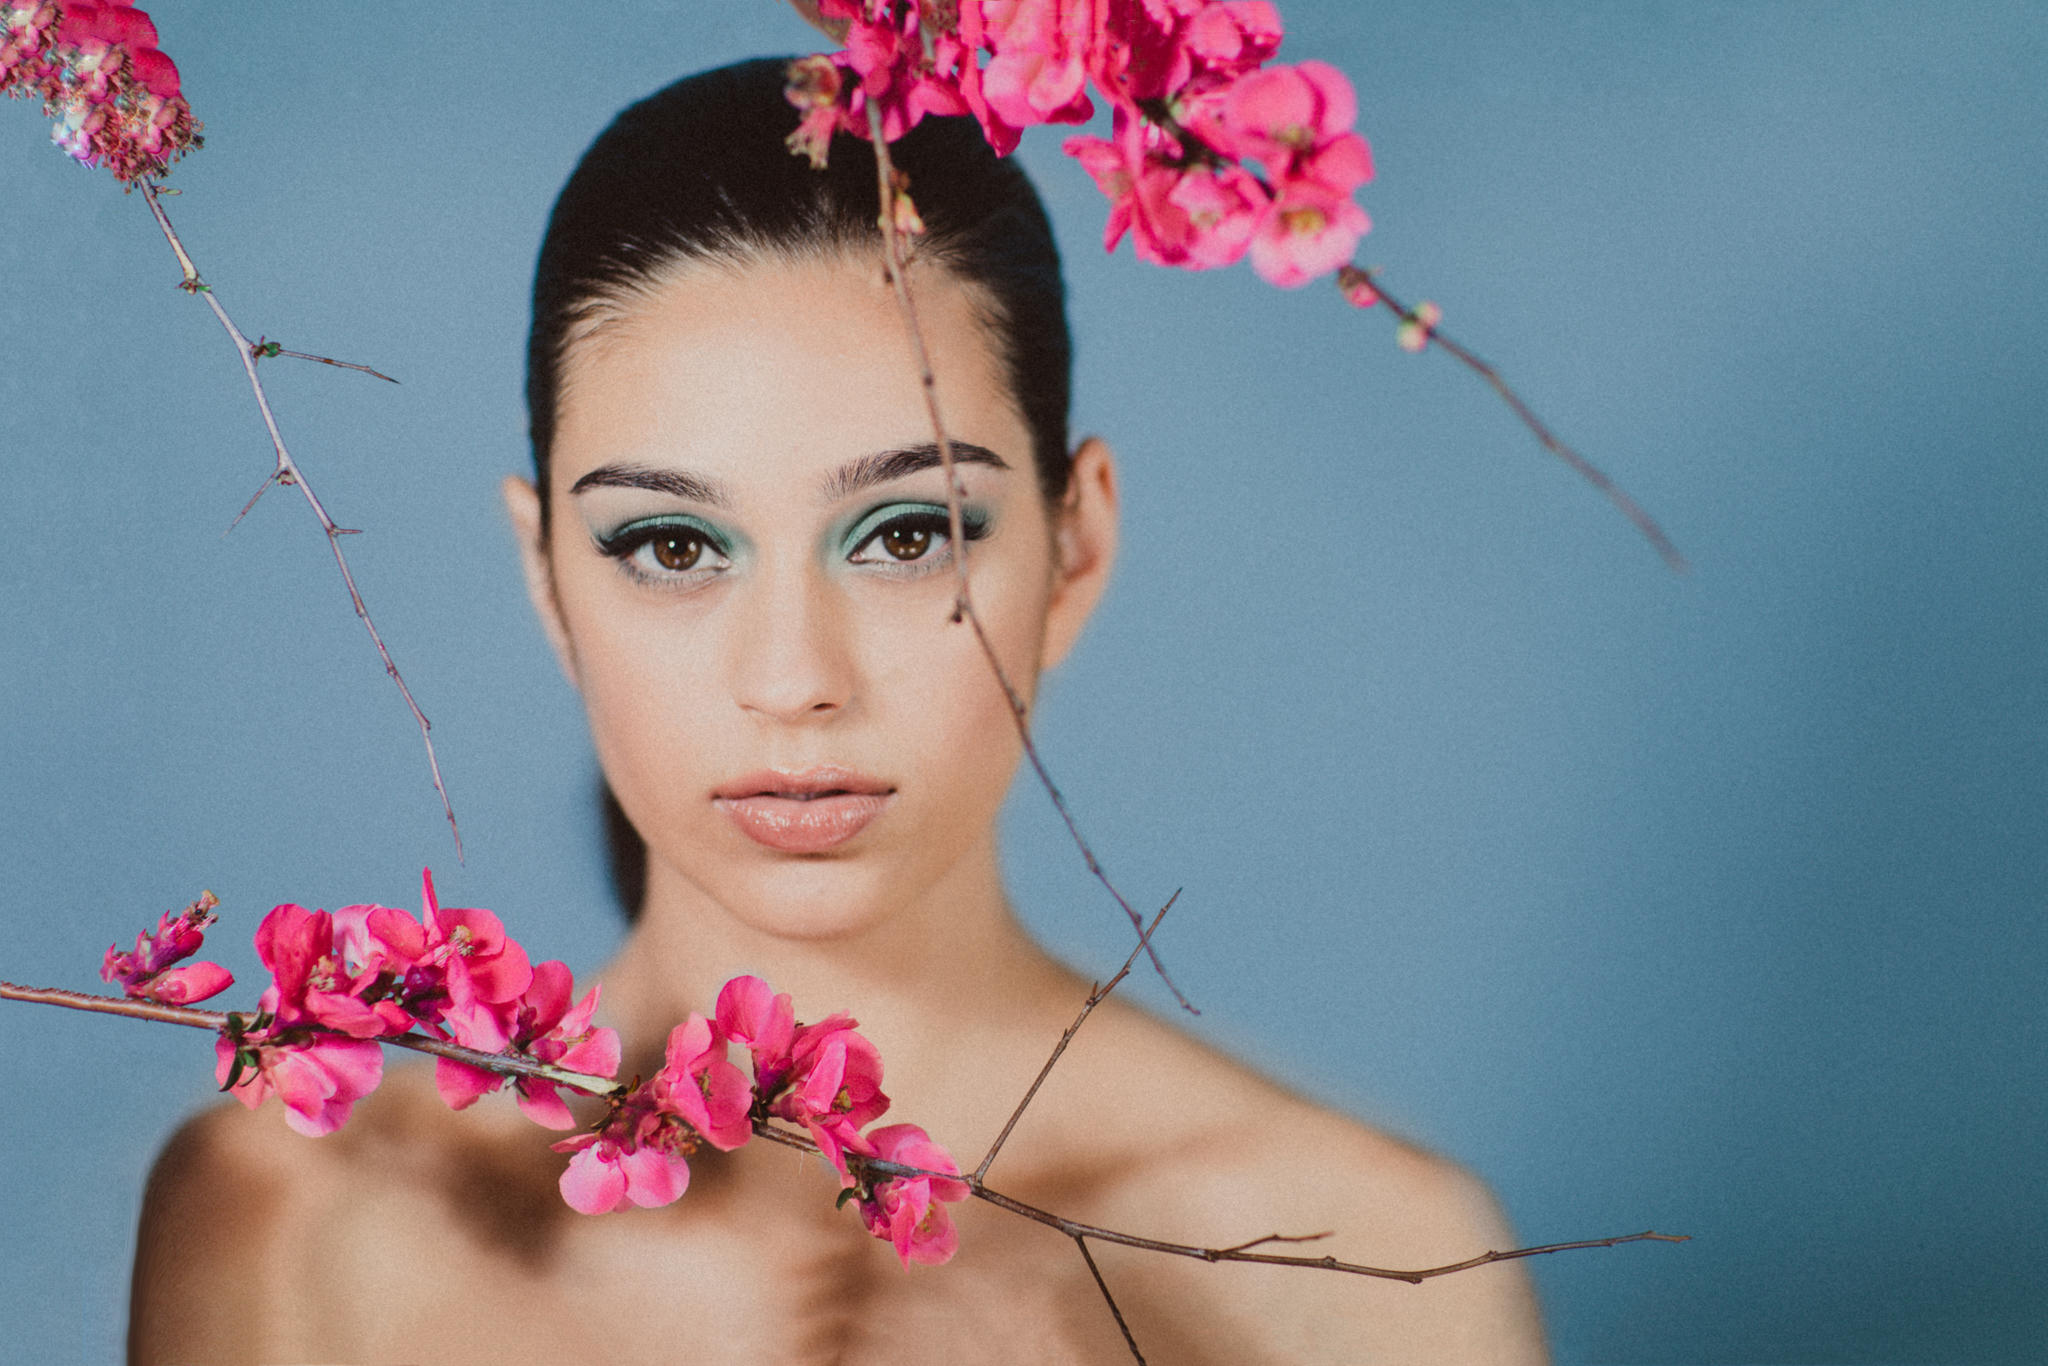 Blossom Beauty Photography